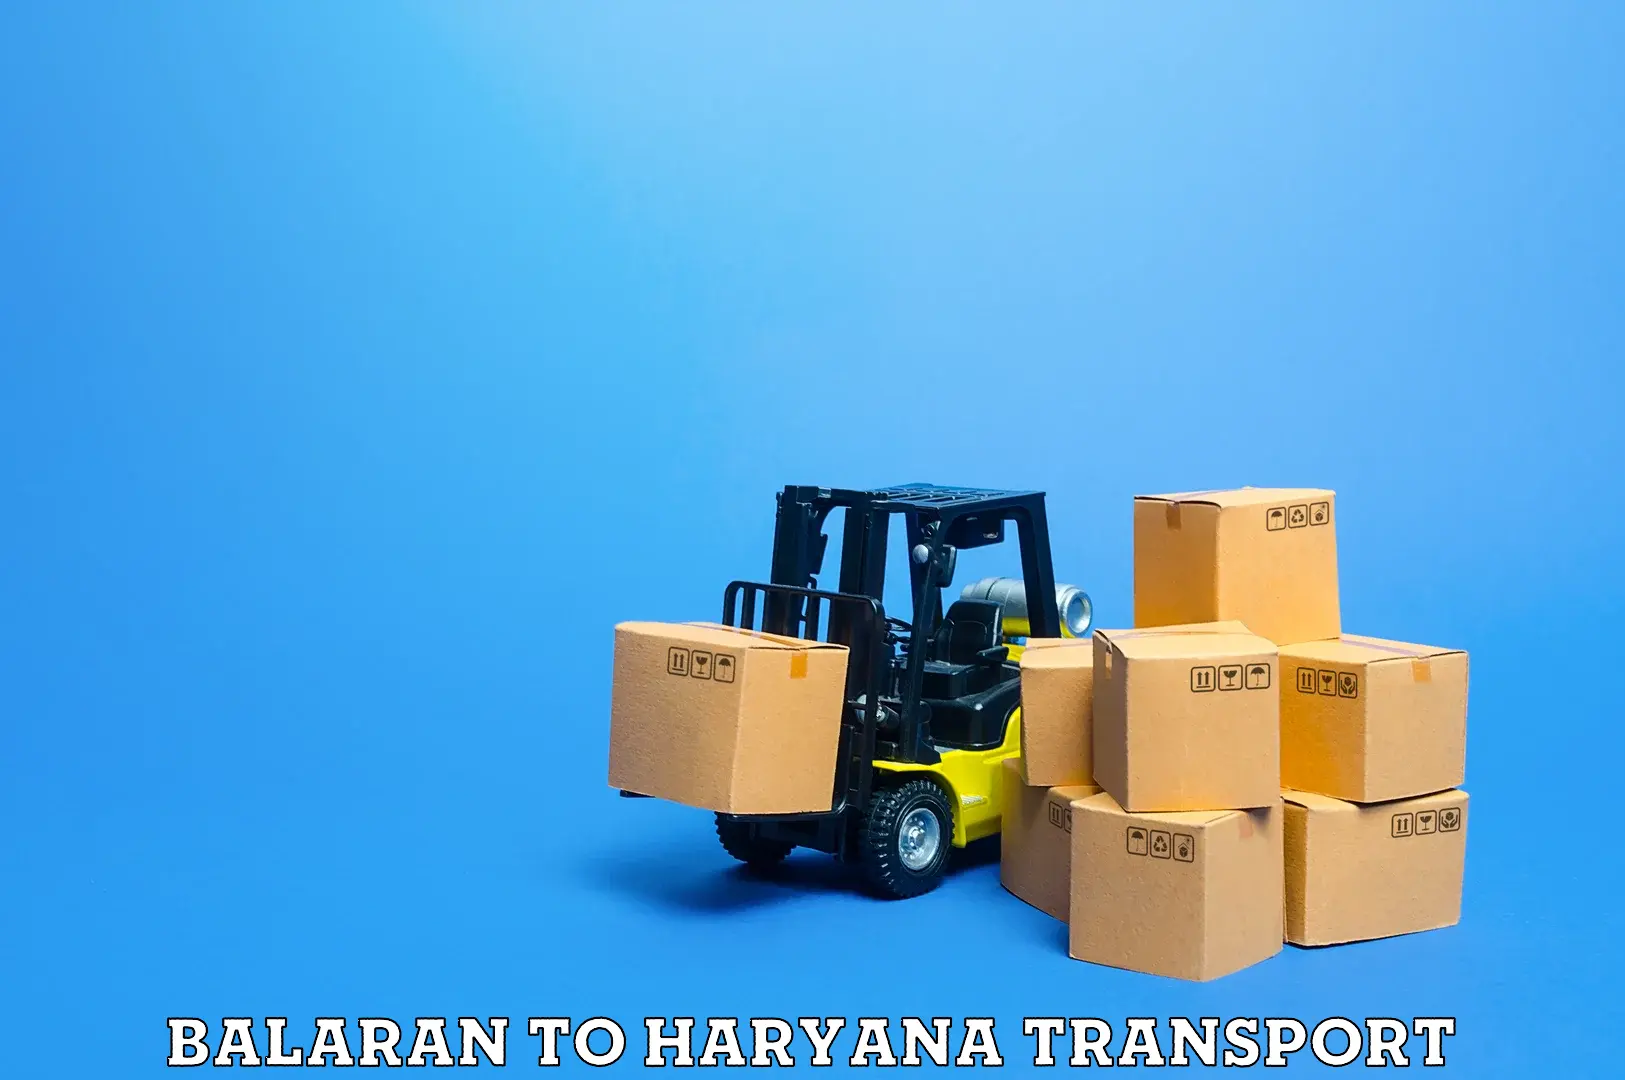 Container transport service Balaran to Haryana